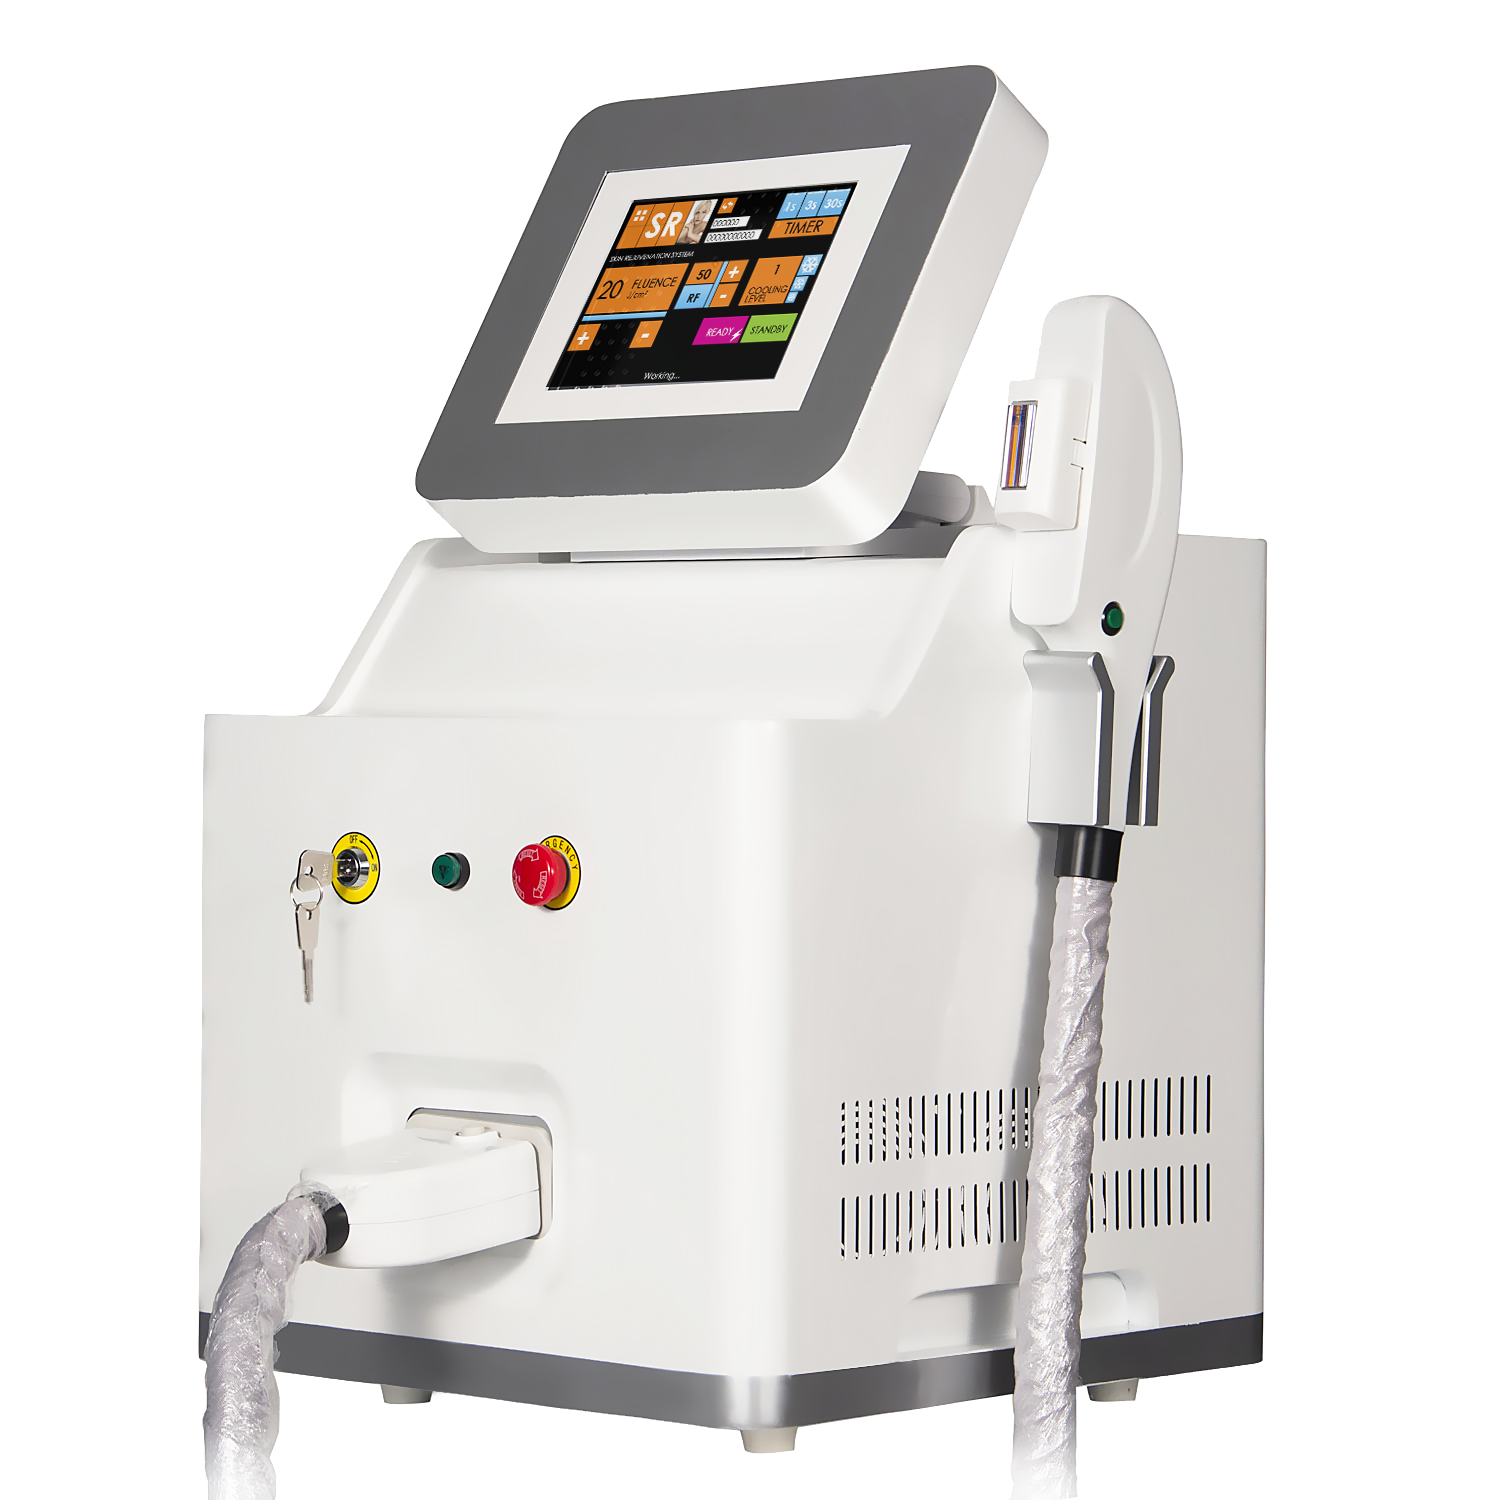 Máquina vertical de alta calidad para el rejuvenecimiento de la piel con depilación permanente con láser IPL